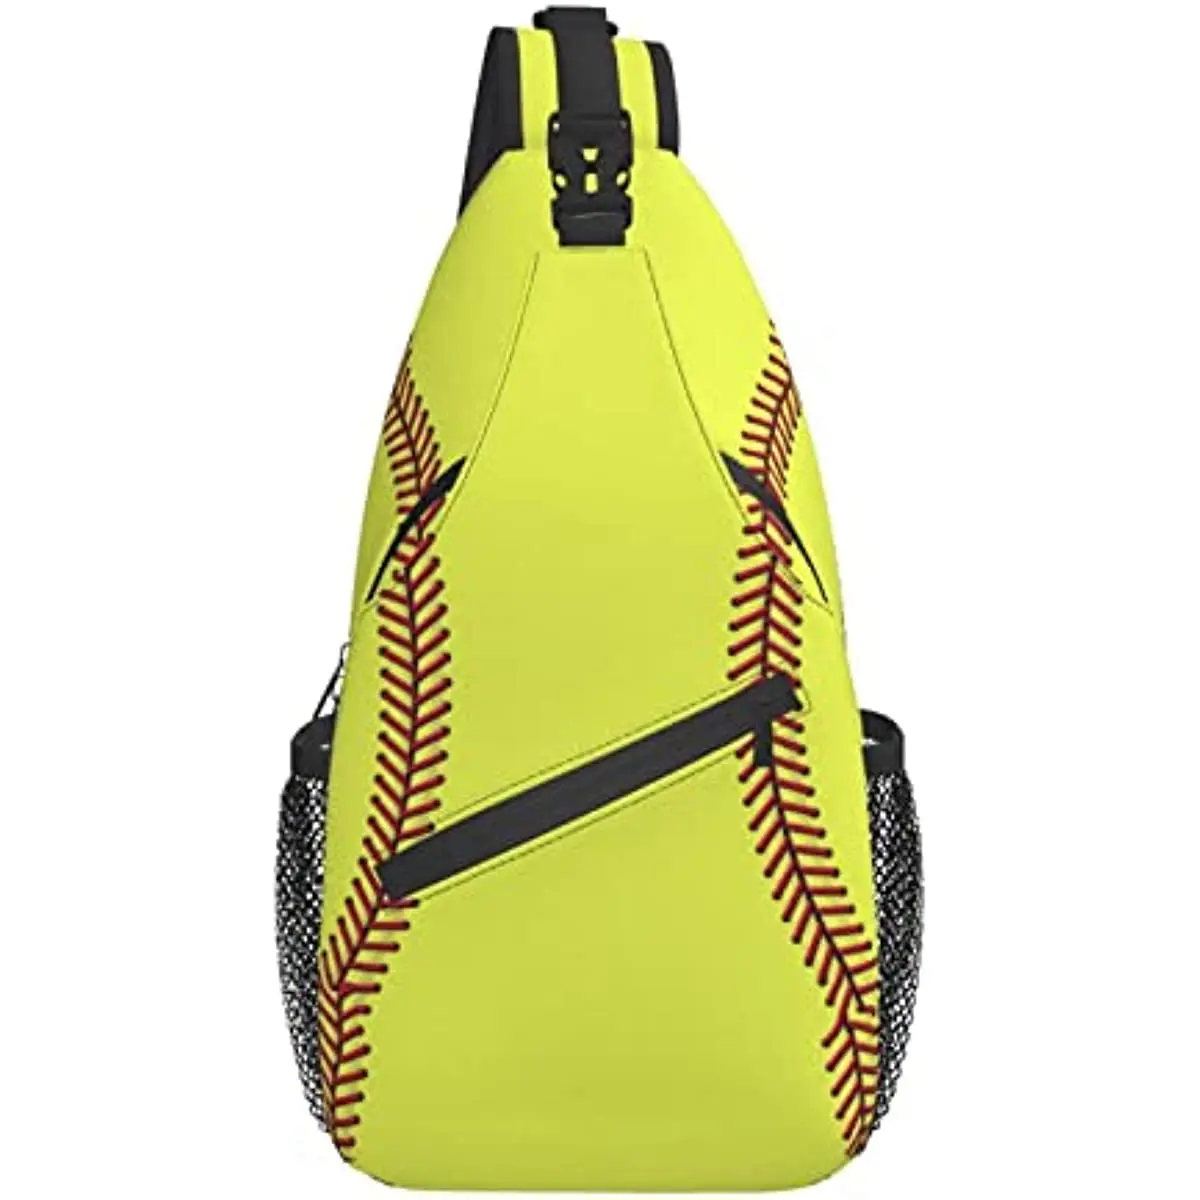 Baseball and Softball Equipment Bags